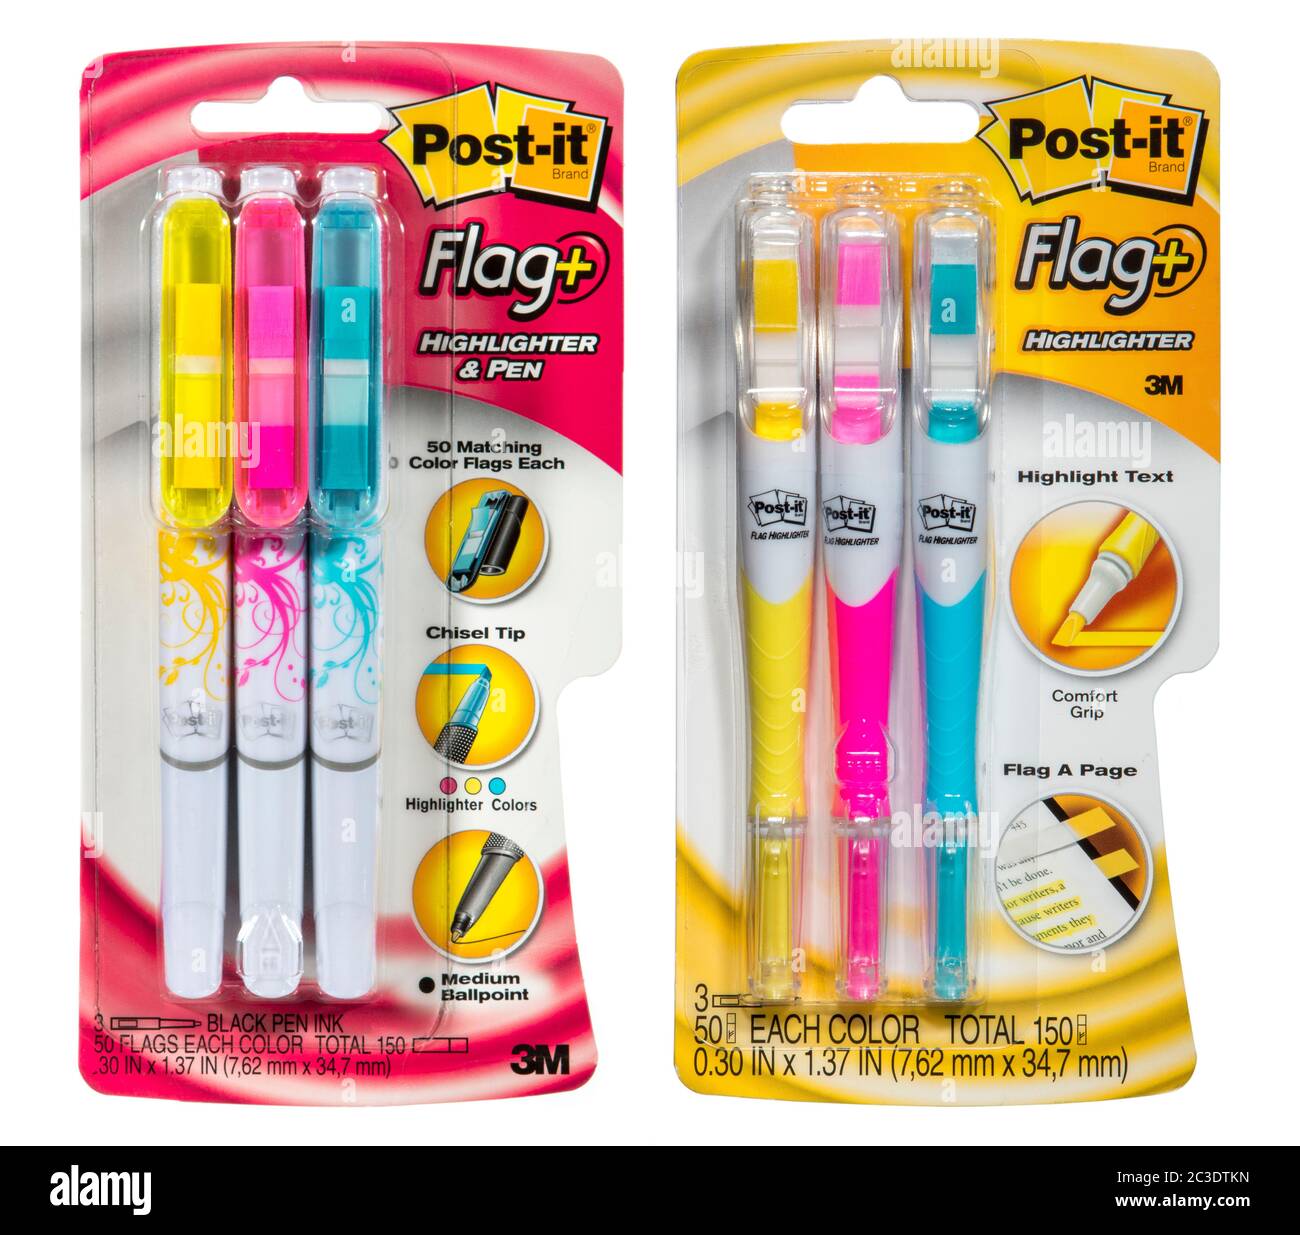 Torcia Post-it Flag+ e accendino + penna di 3M Foto Stock